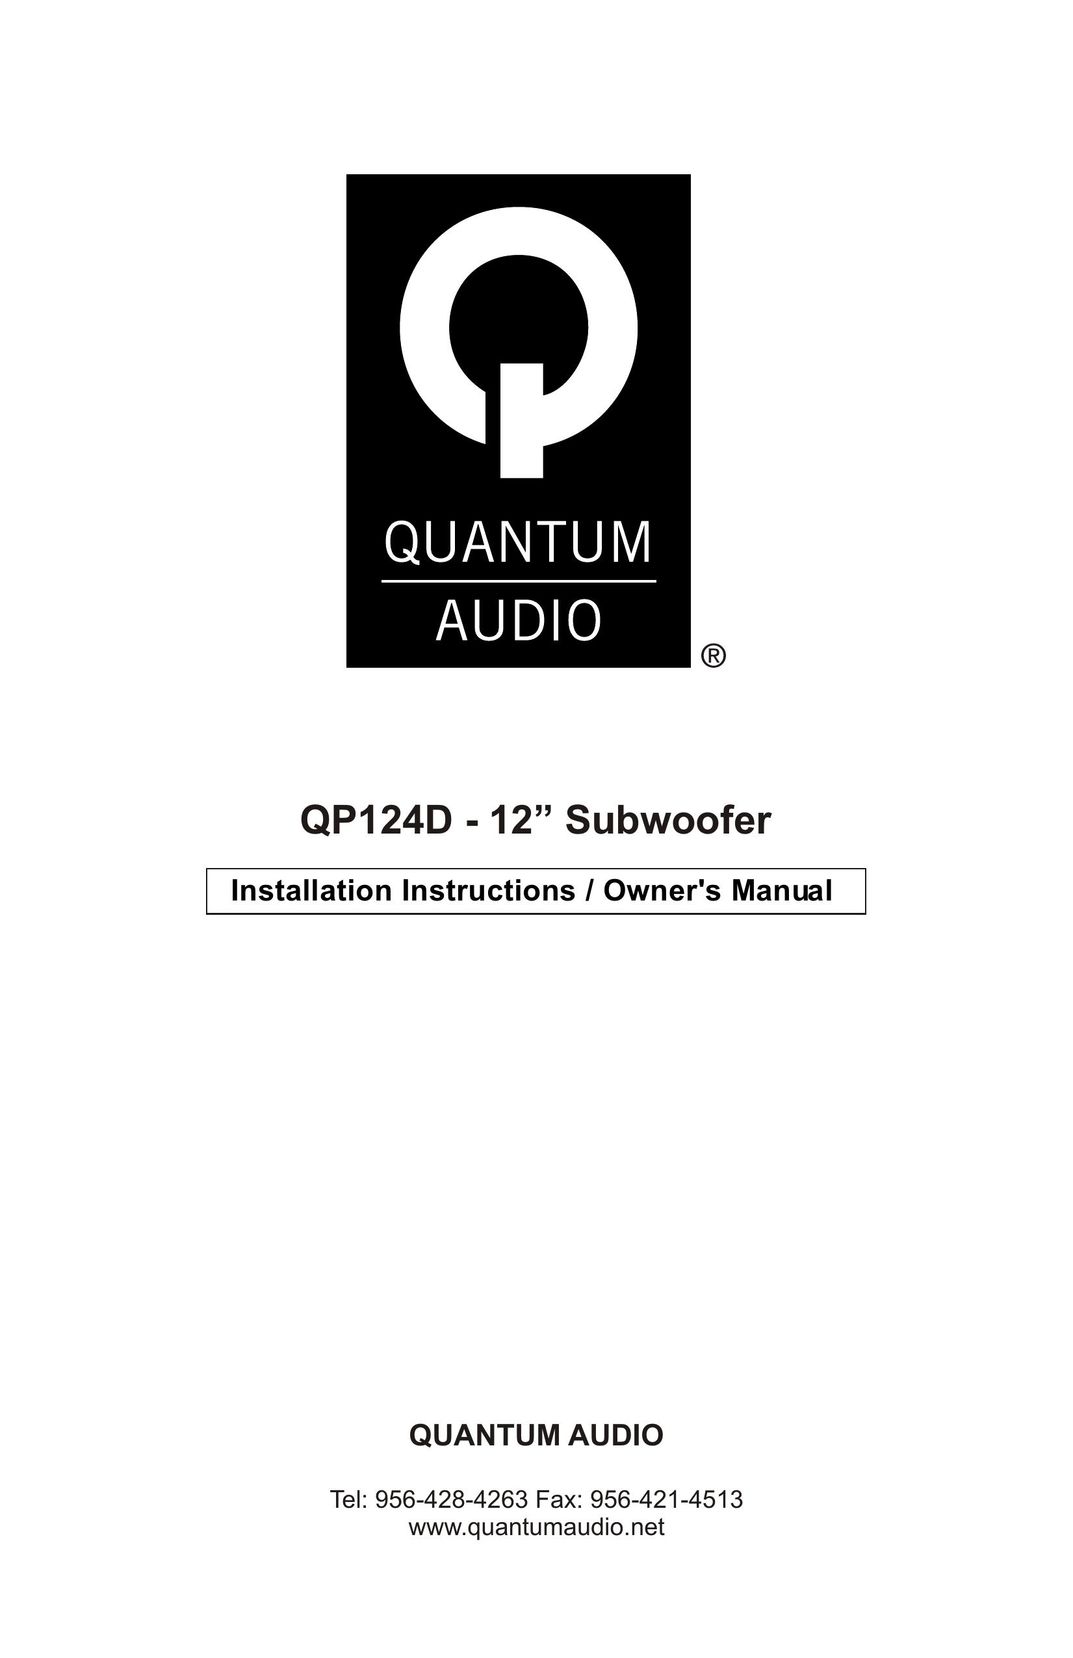 Quantum Audio QP124D Car Speaker User Manual